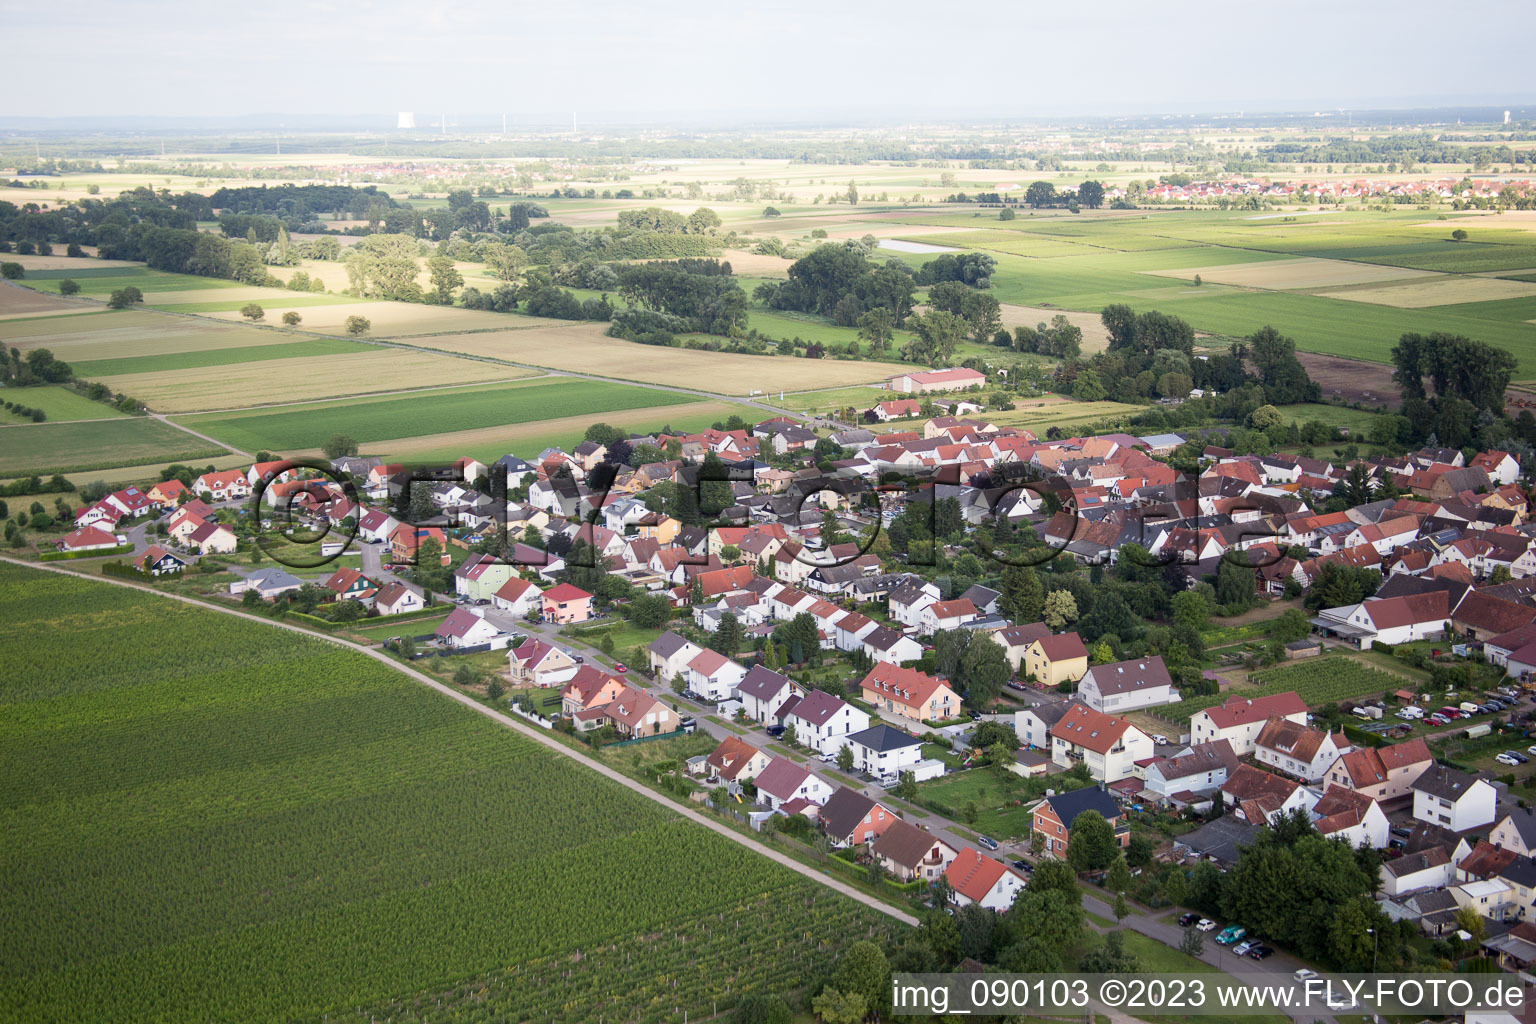 Luftbild von Ortsteil Duttweiler in Neustadt an der Weinstraße im Bundesland Rheinland-Pfalz, Deutschland